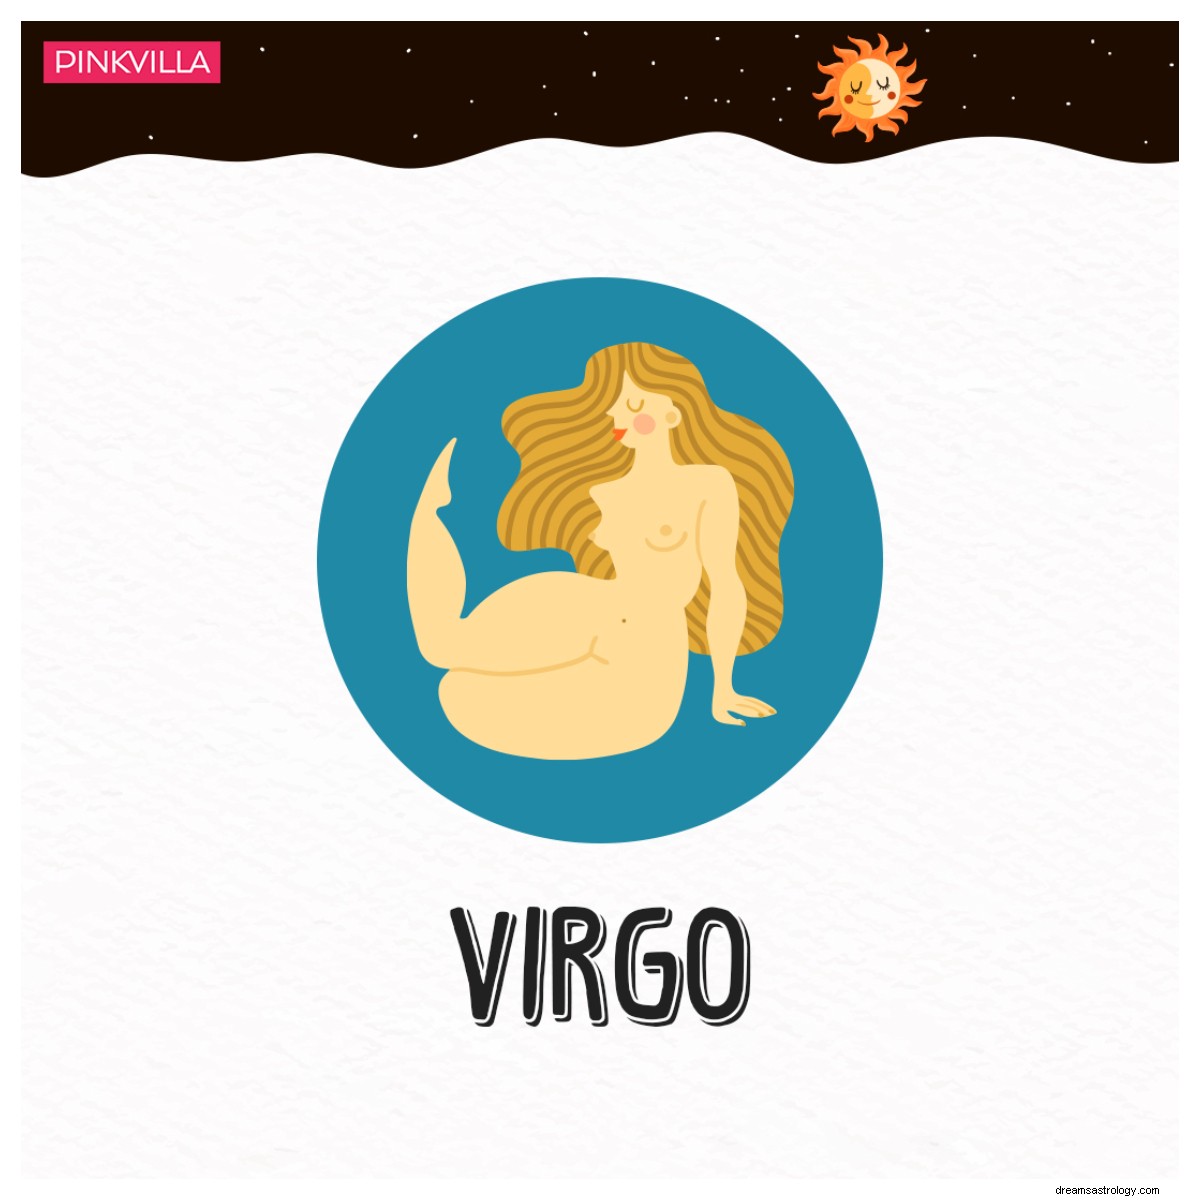 Áries a Virgem:4 signos gastronômicos do zodíaco que anseiam por delícias gastronômicas 